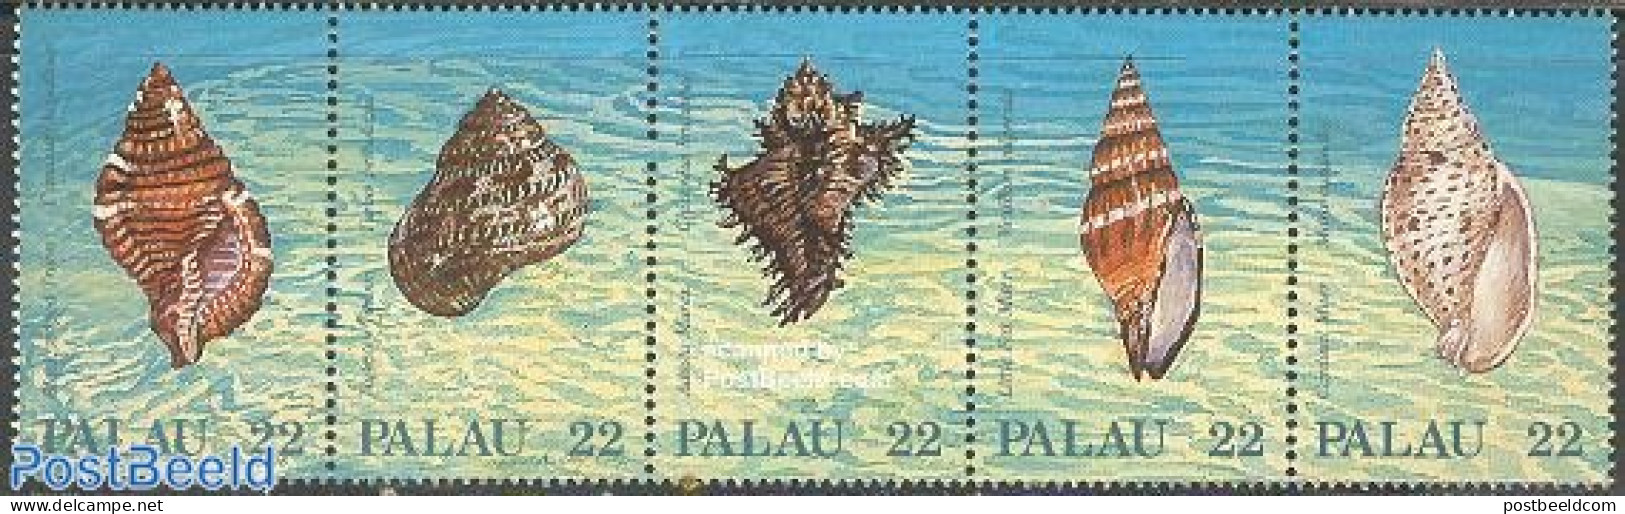 Palau 1987 Shells 5v [::::], Mint NH, Nature - Shells & Crustaceans - Vita Acquatica